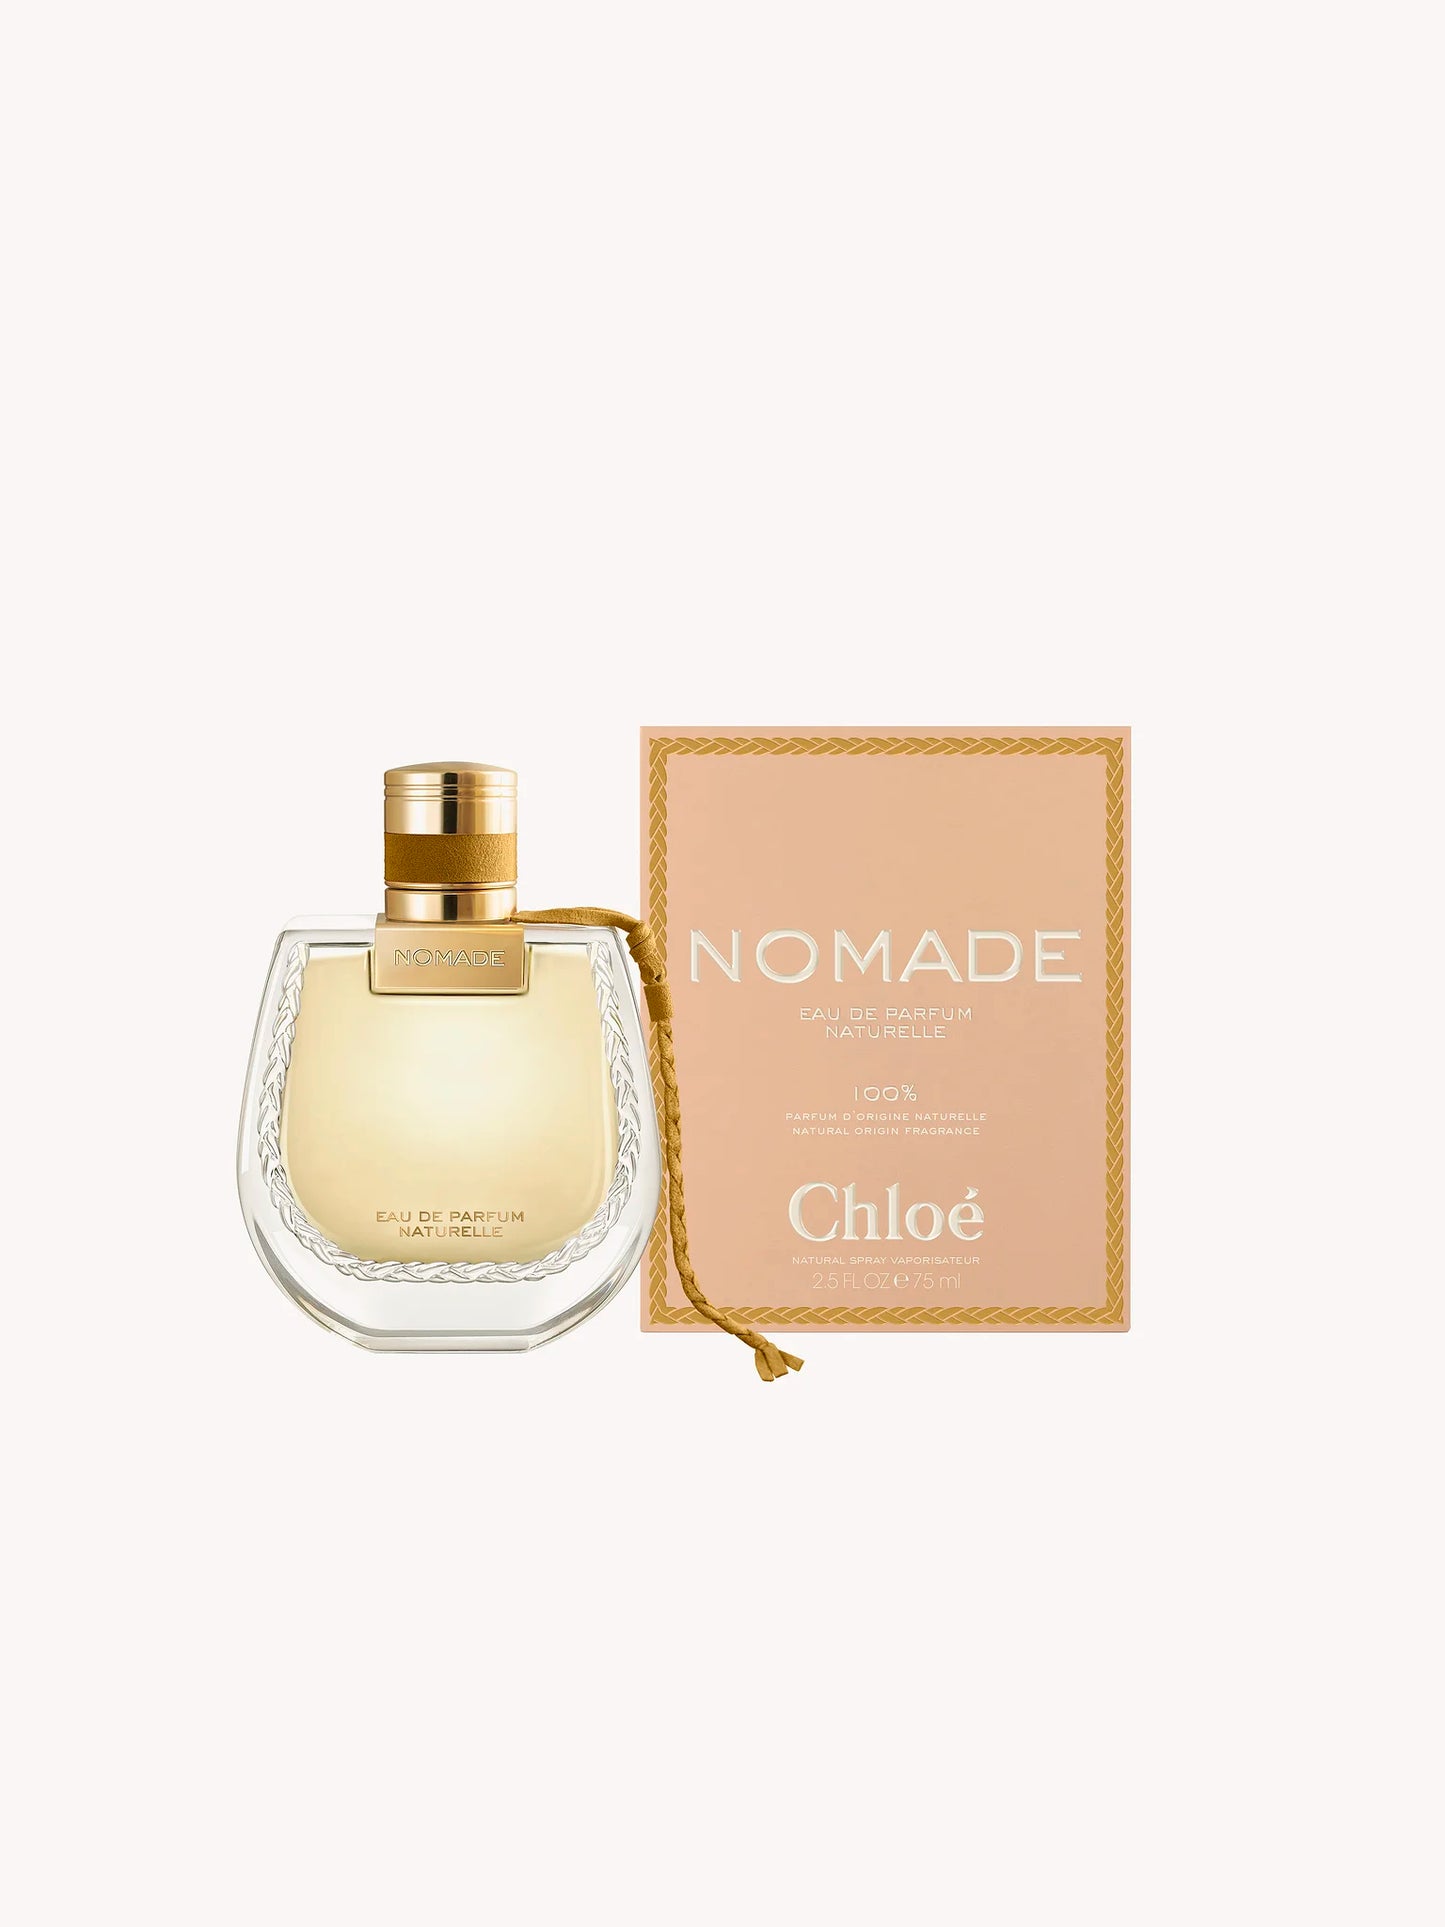 CHLOE Nomade Eau De Parfum Naturelle (30ml)